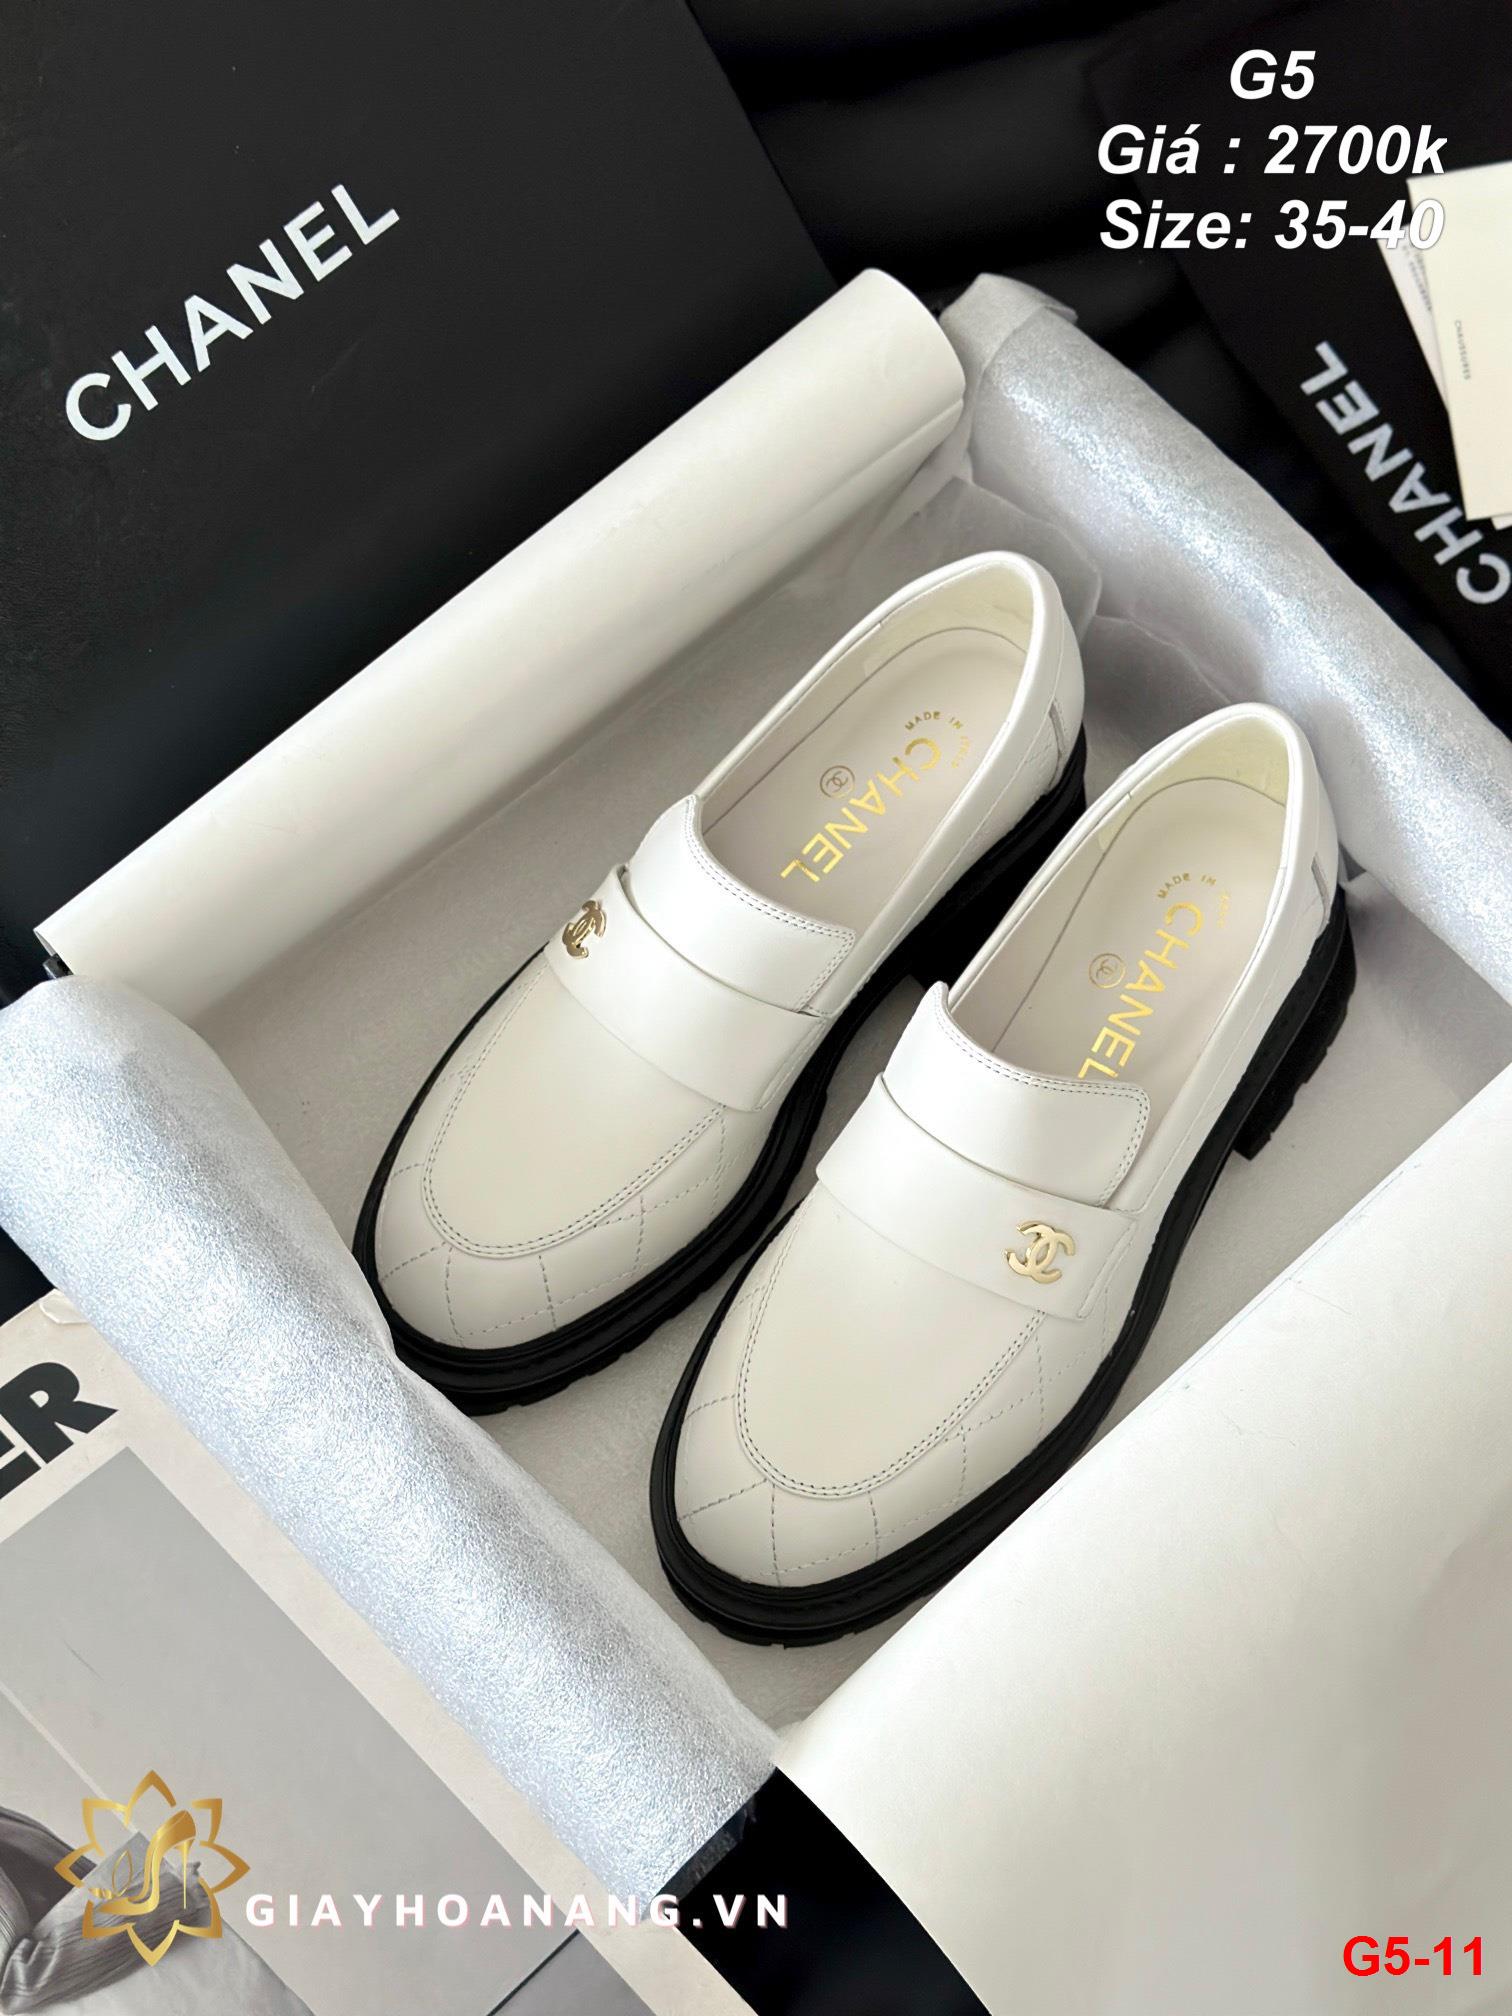 G5-11 Chanel giày lười siêu cấp